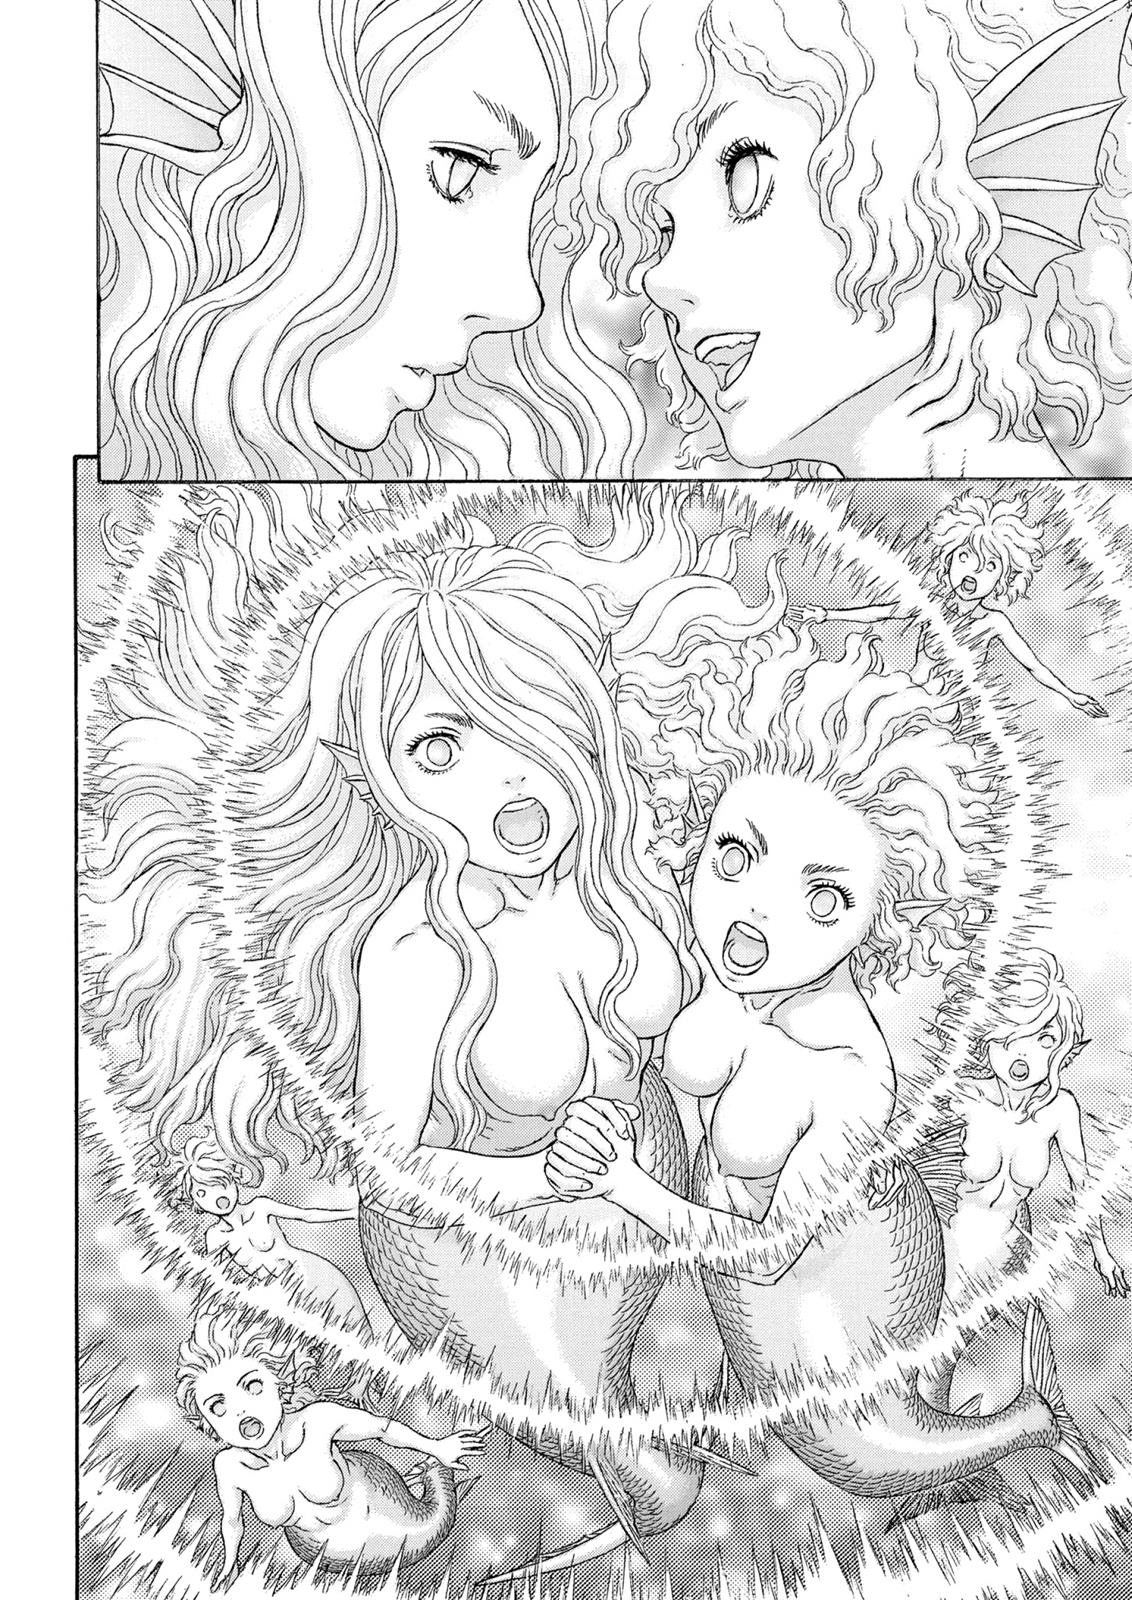 Berserk Manga Chapter 325 image 30